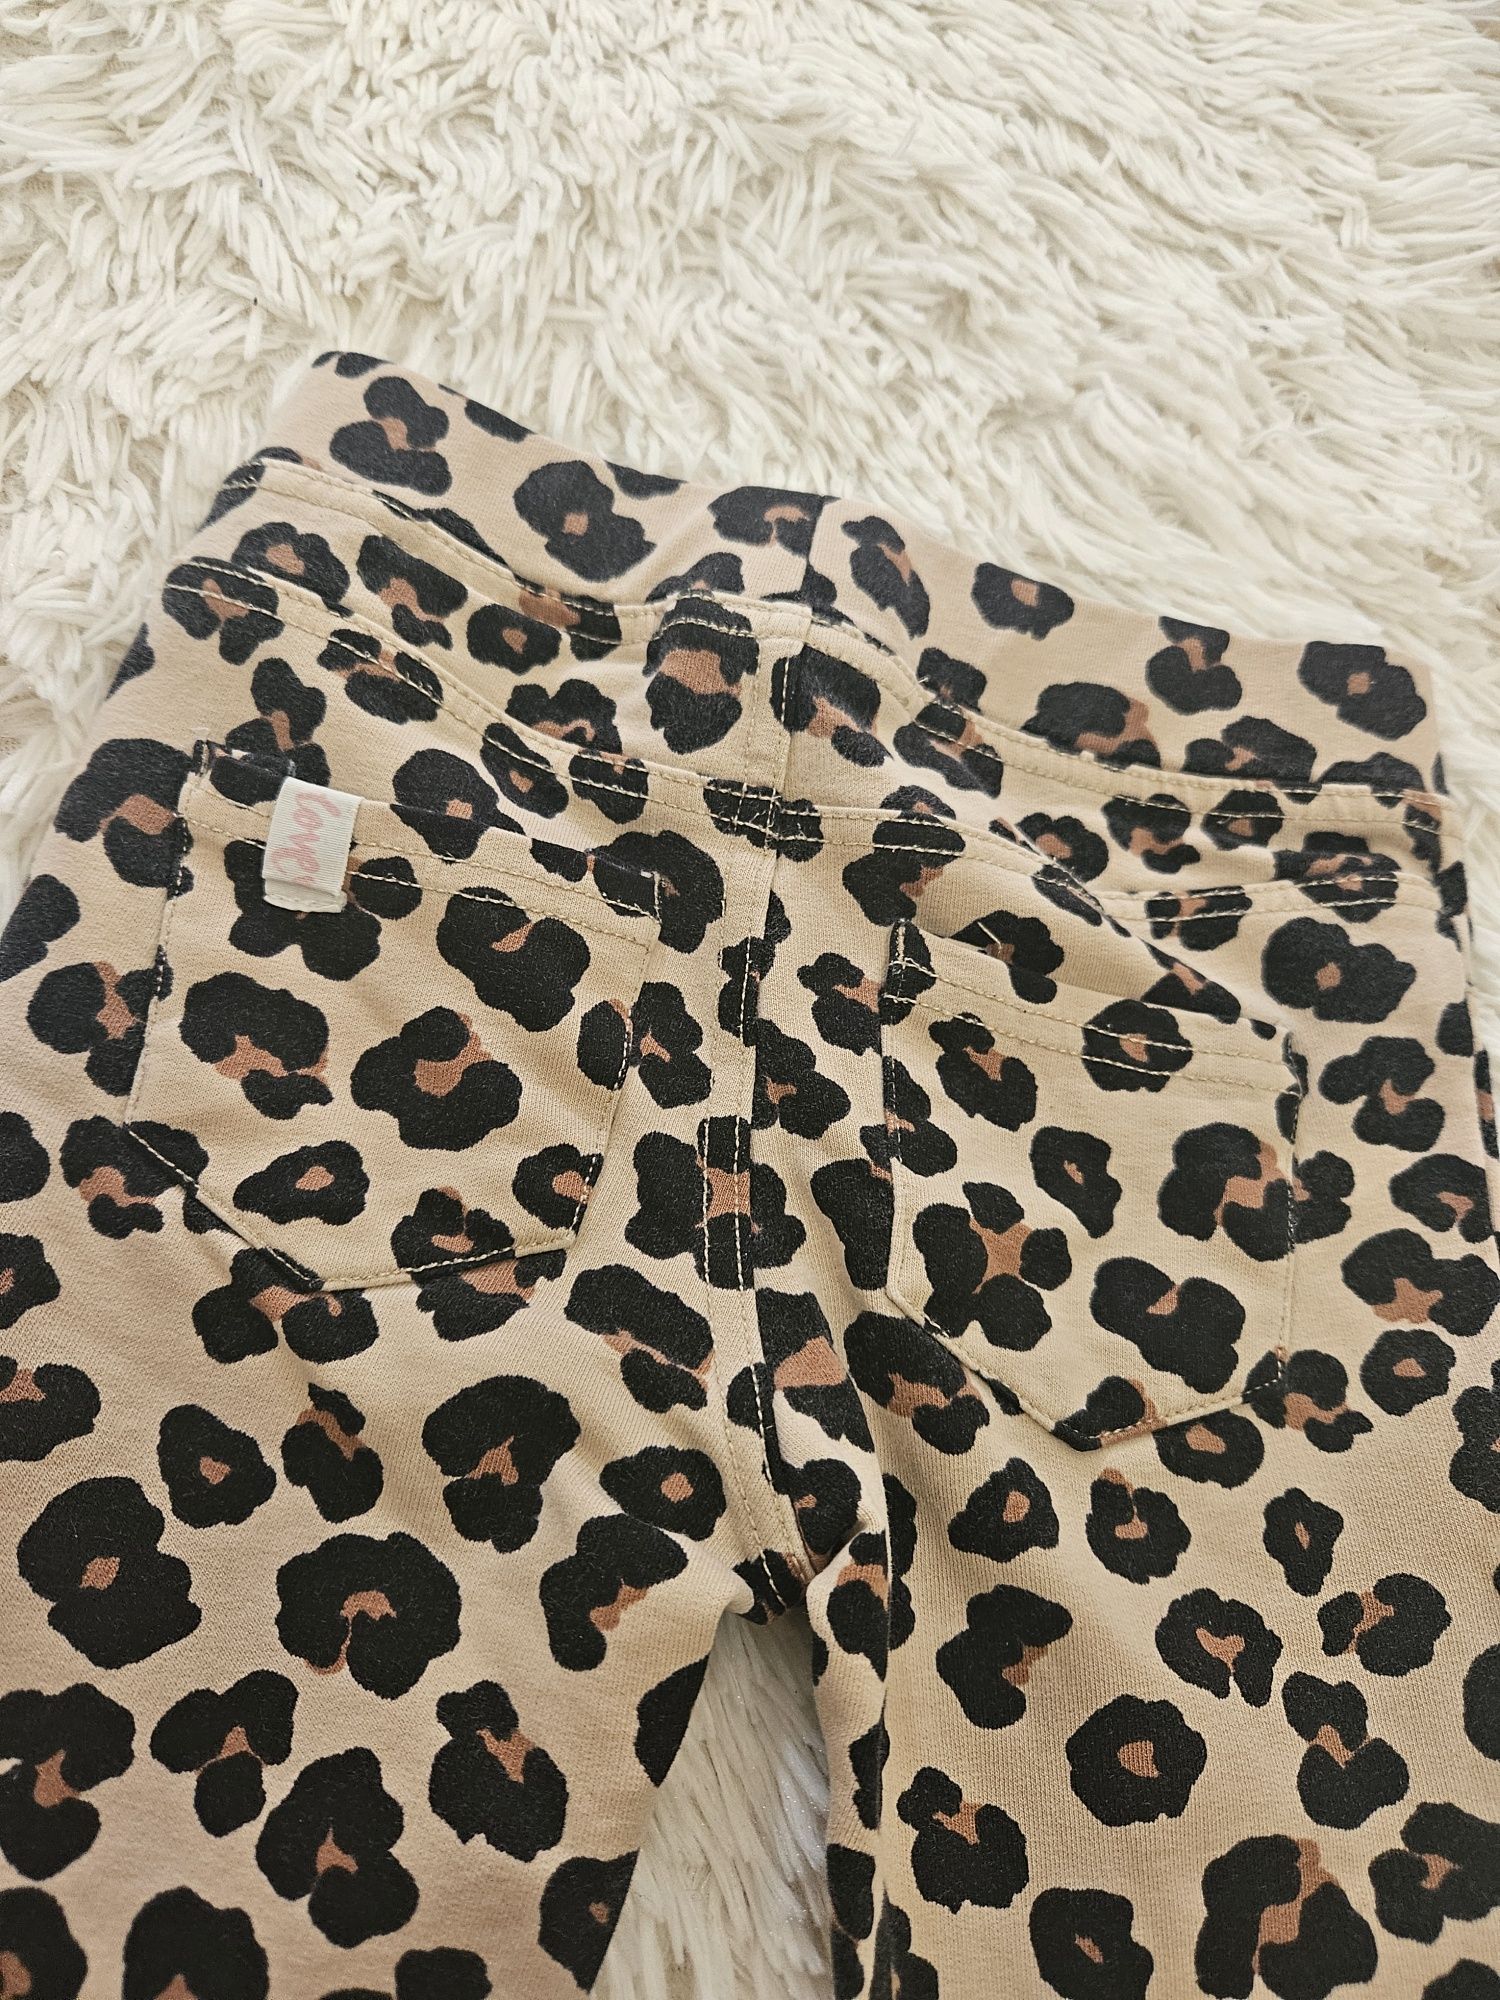 Pantaloni animal print cu buzunare la spate
Marimea 104
H&M
Stare impe